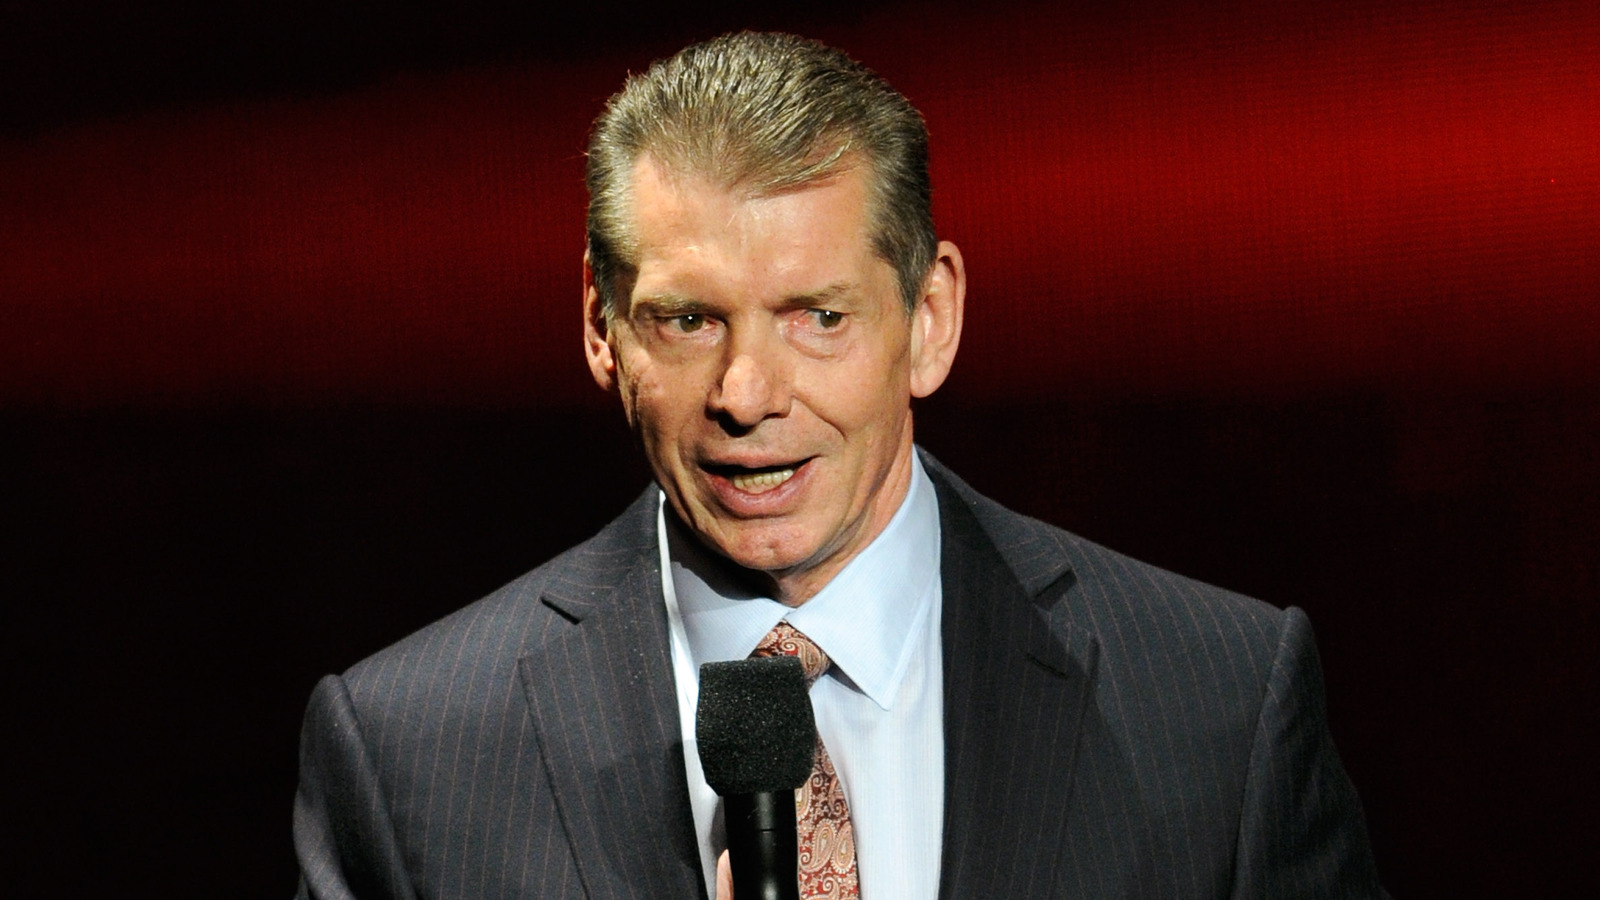 Detalles detrás del escenario sobre la participación creativa más reciente de Vince McMahon en la WWE